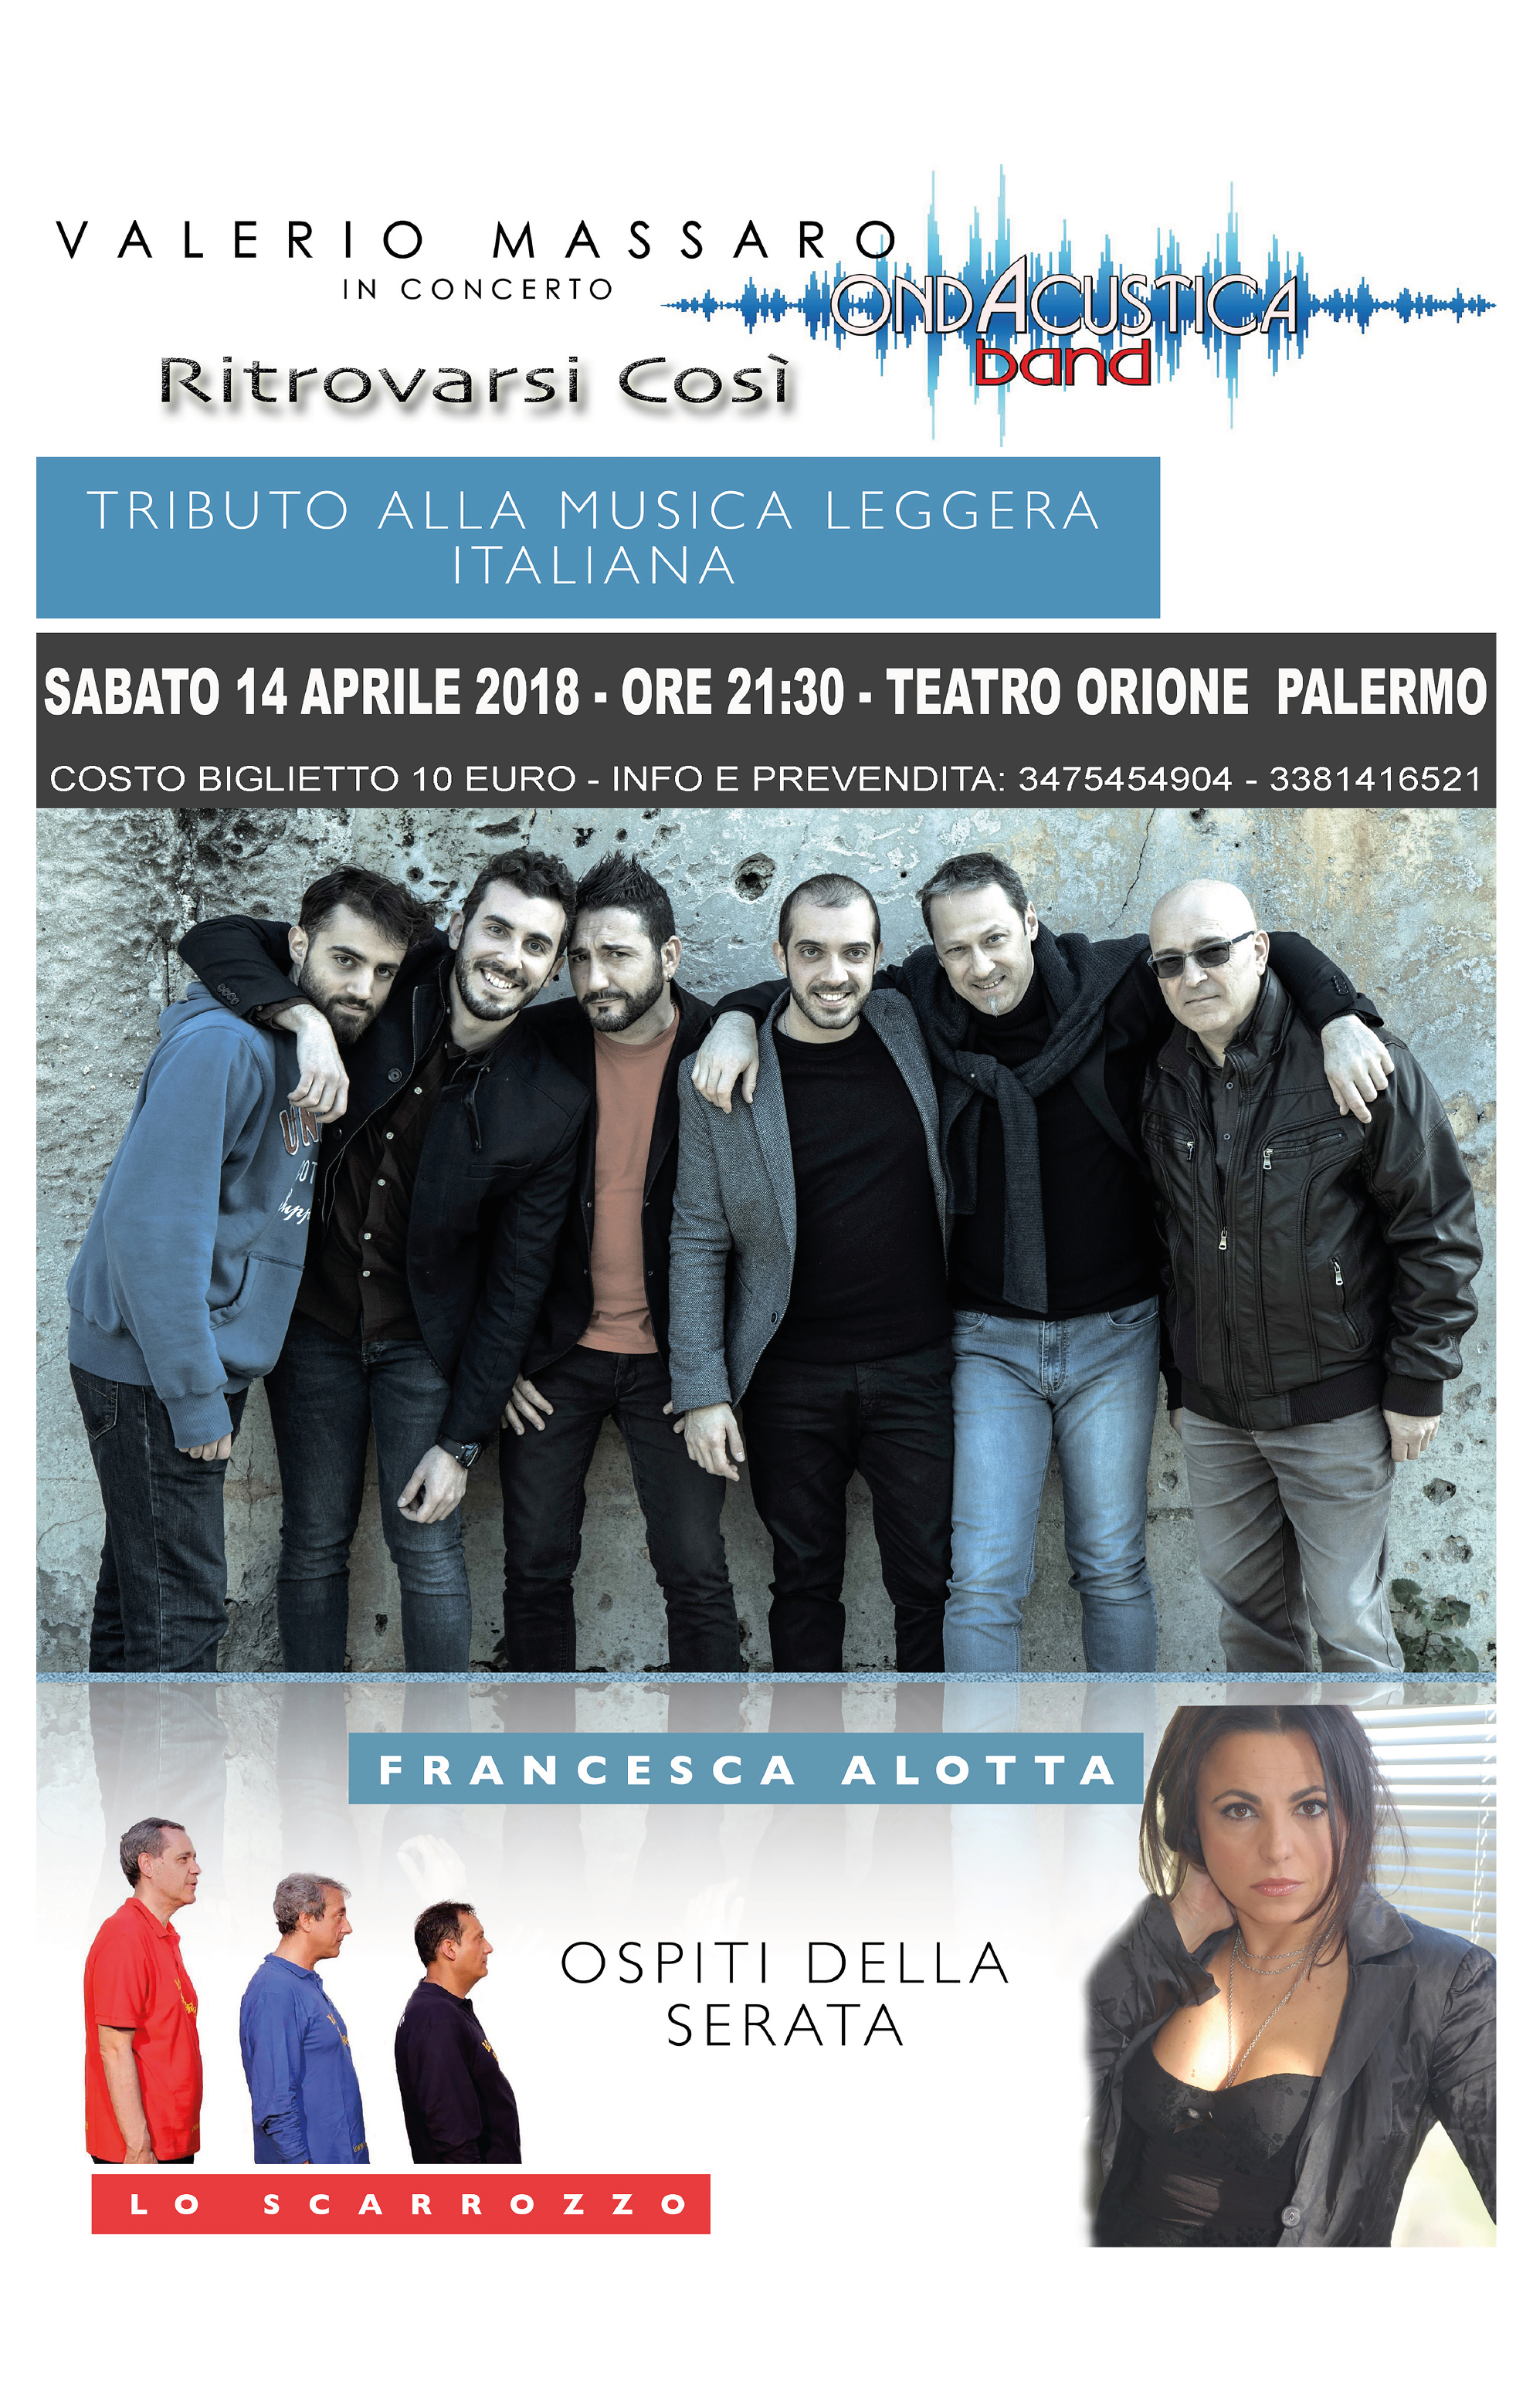 Valerio Massaro & OndAcustica Band in concerto: “Ritrovarsi così” tra ospiti e cabaret